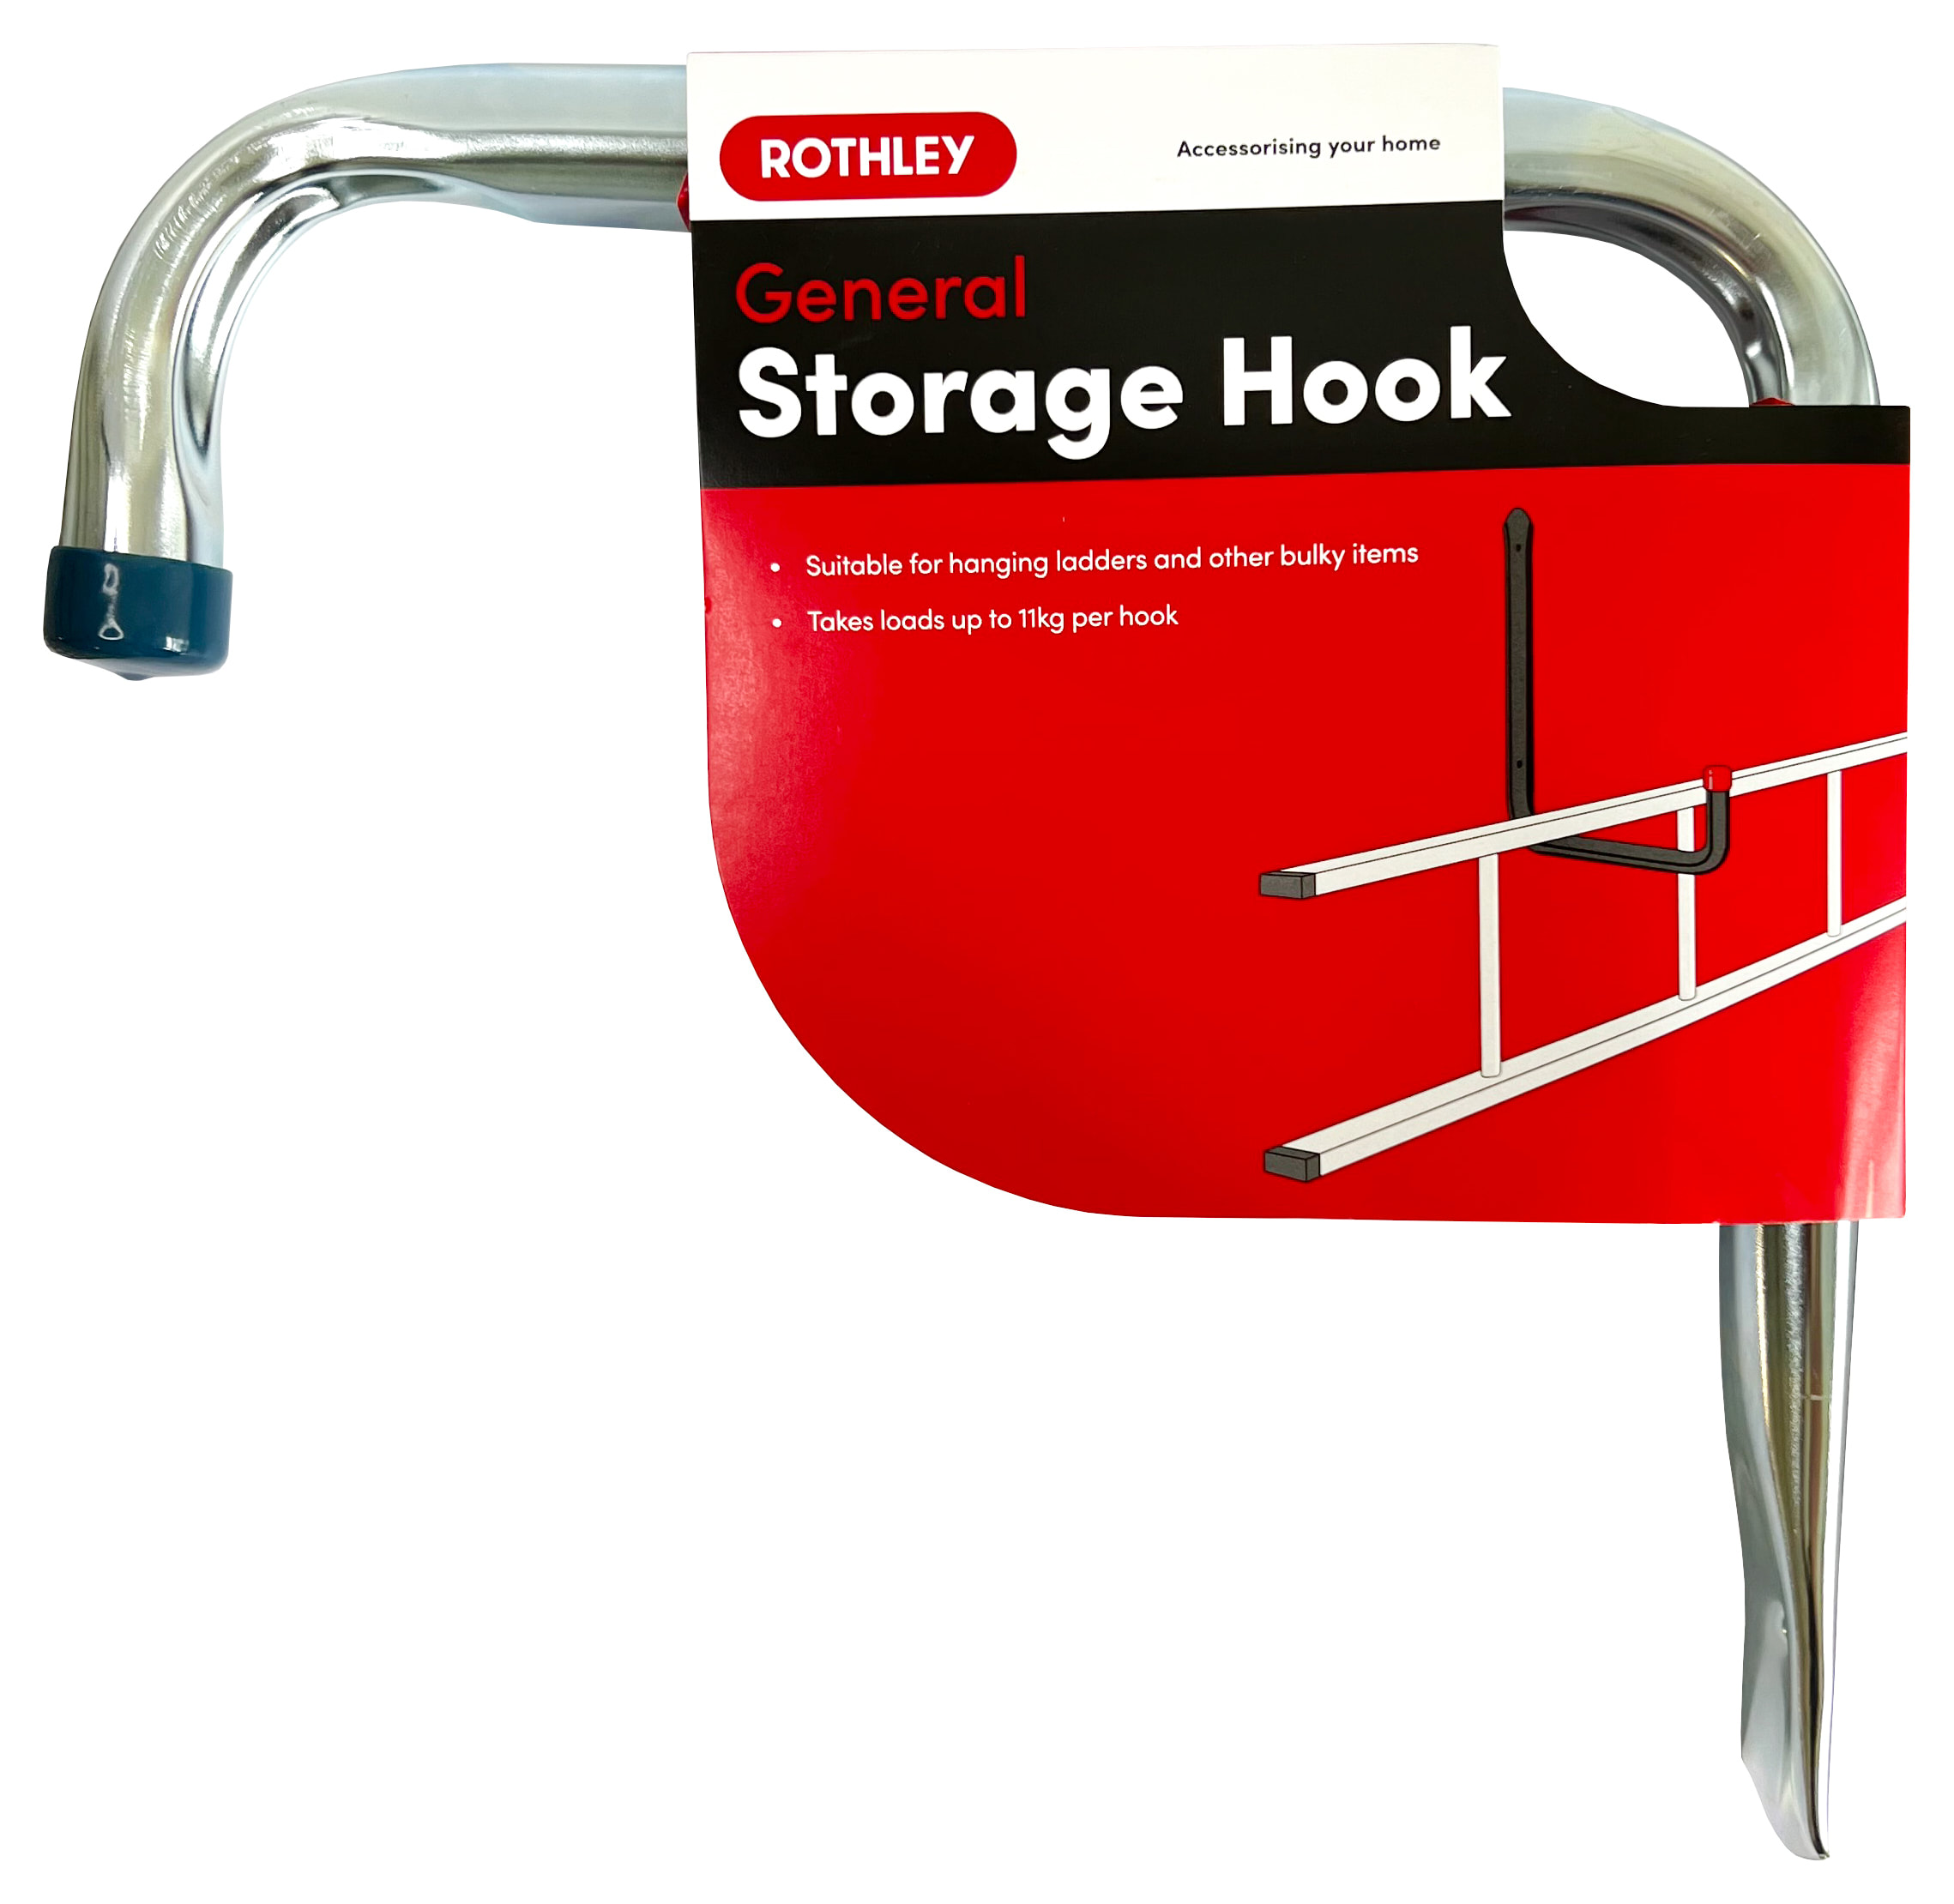 Rothley General Storage Hook